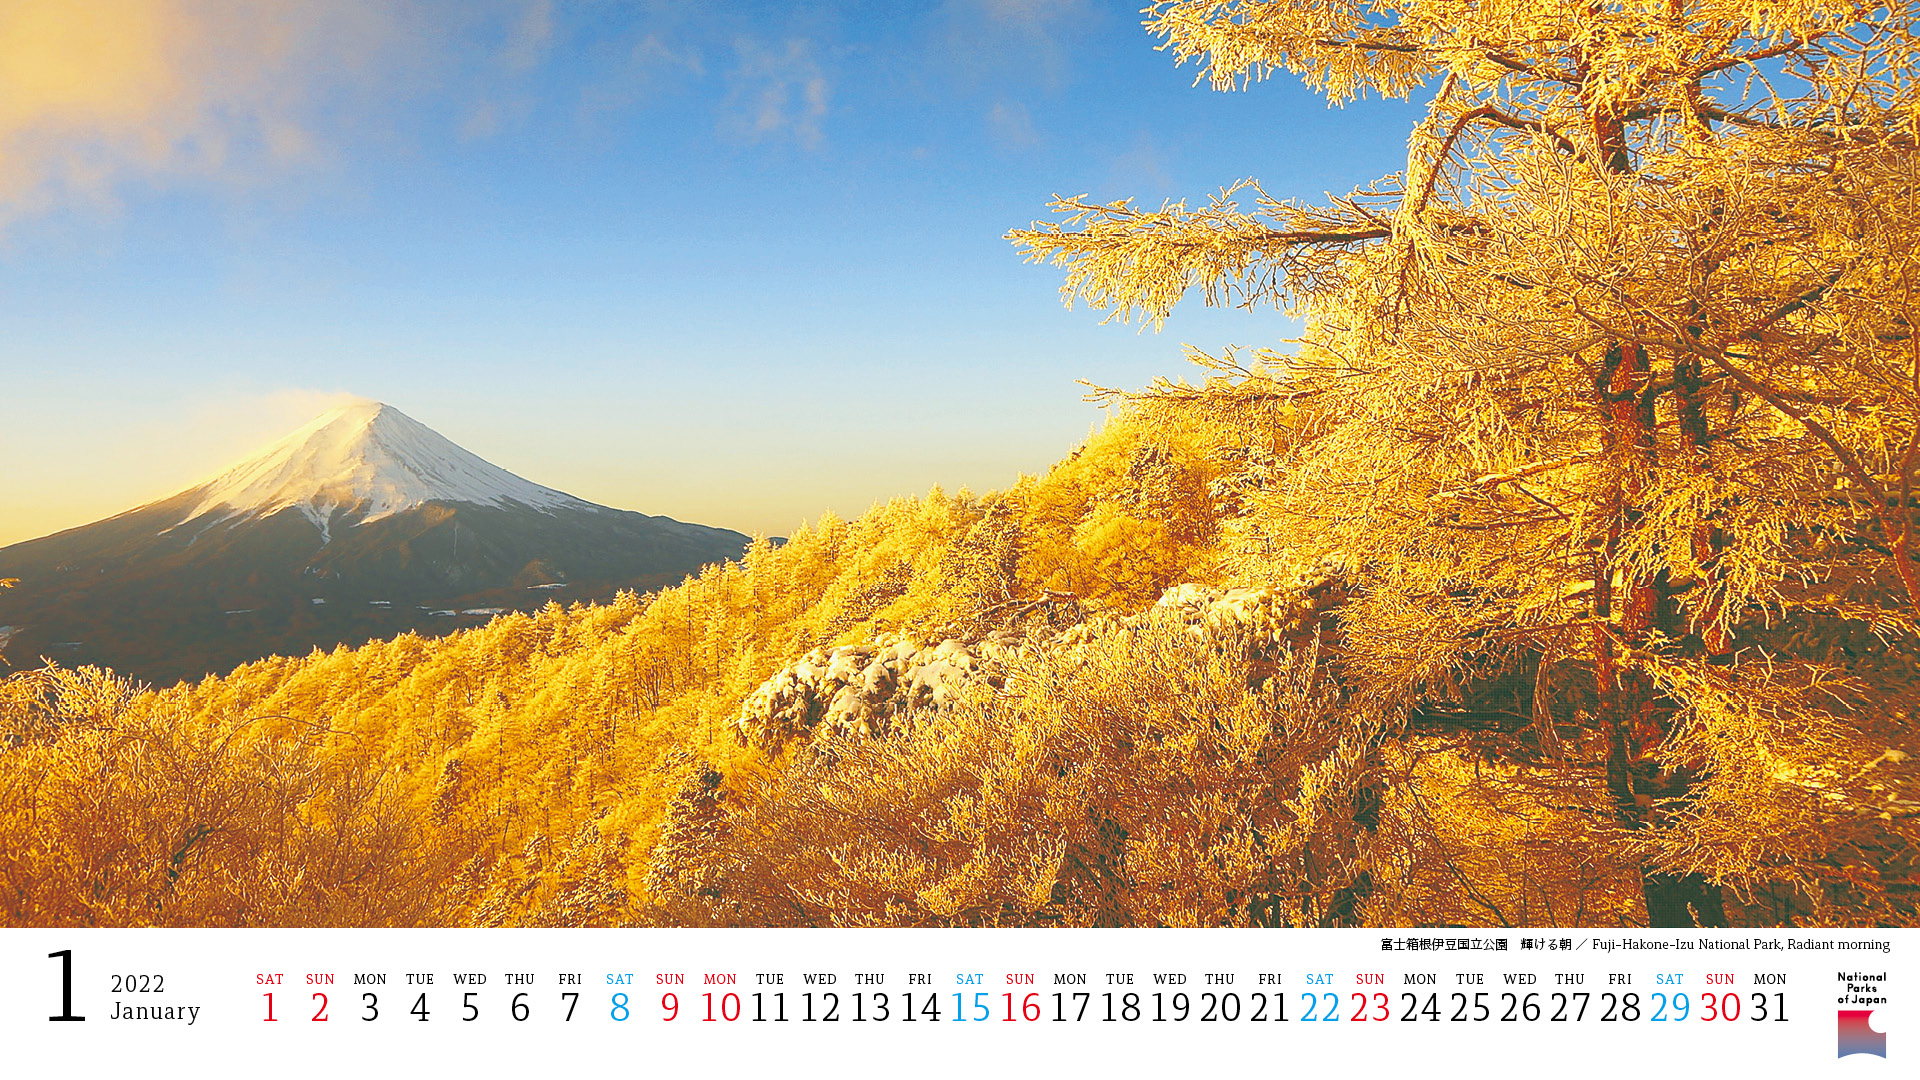 環境省 国立公園 法令 各種資料 22年国立公園カレンダー 22 Calendar National Parks Of Japan